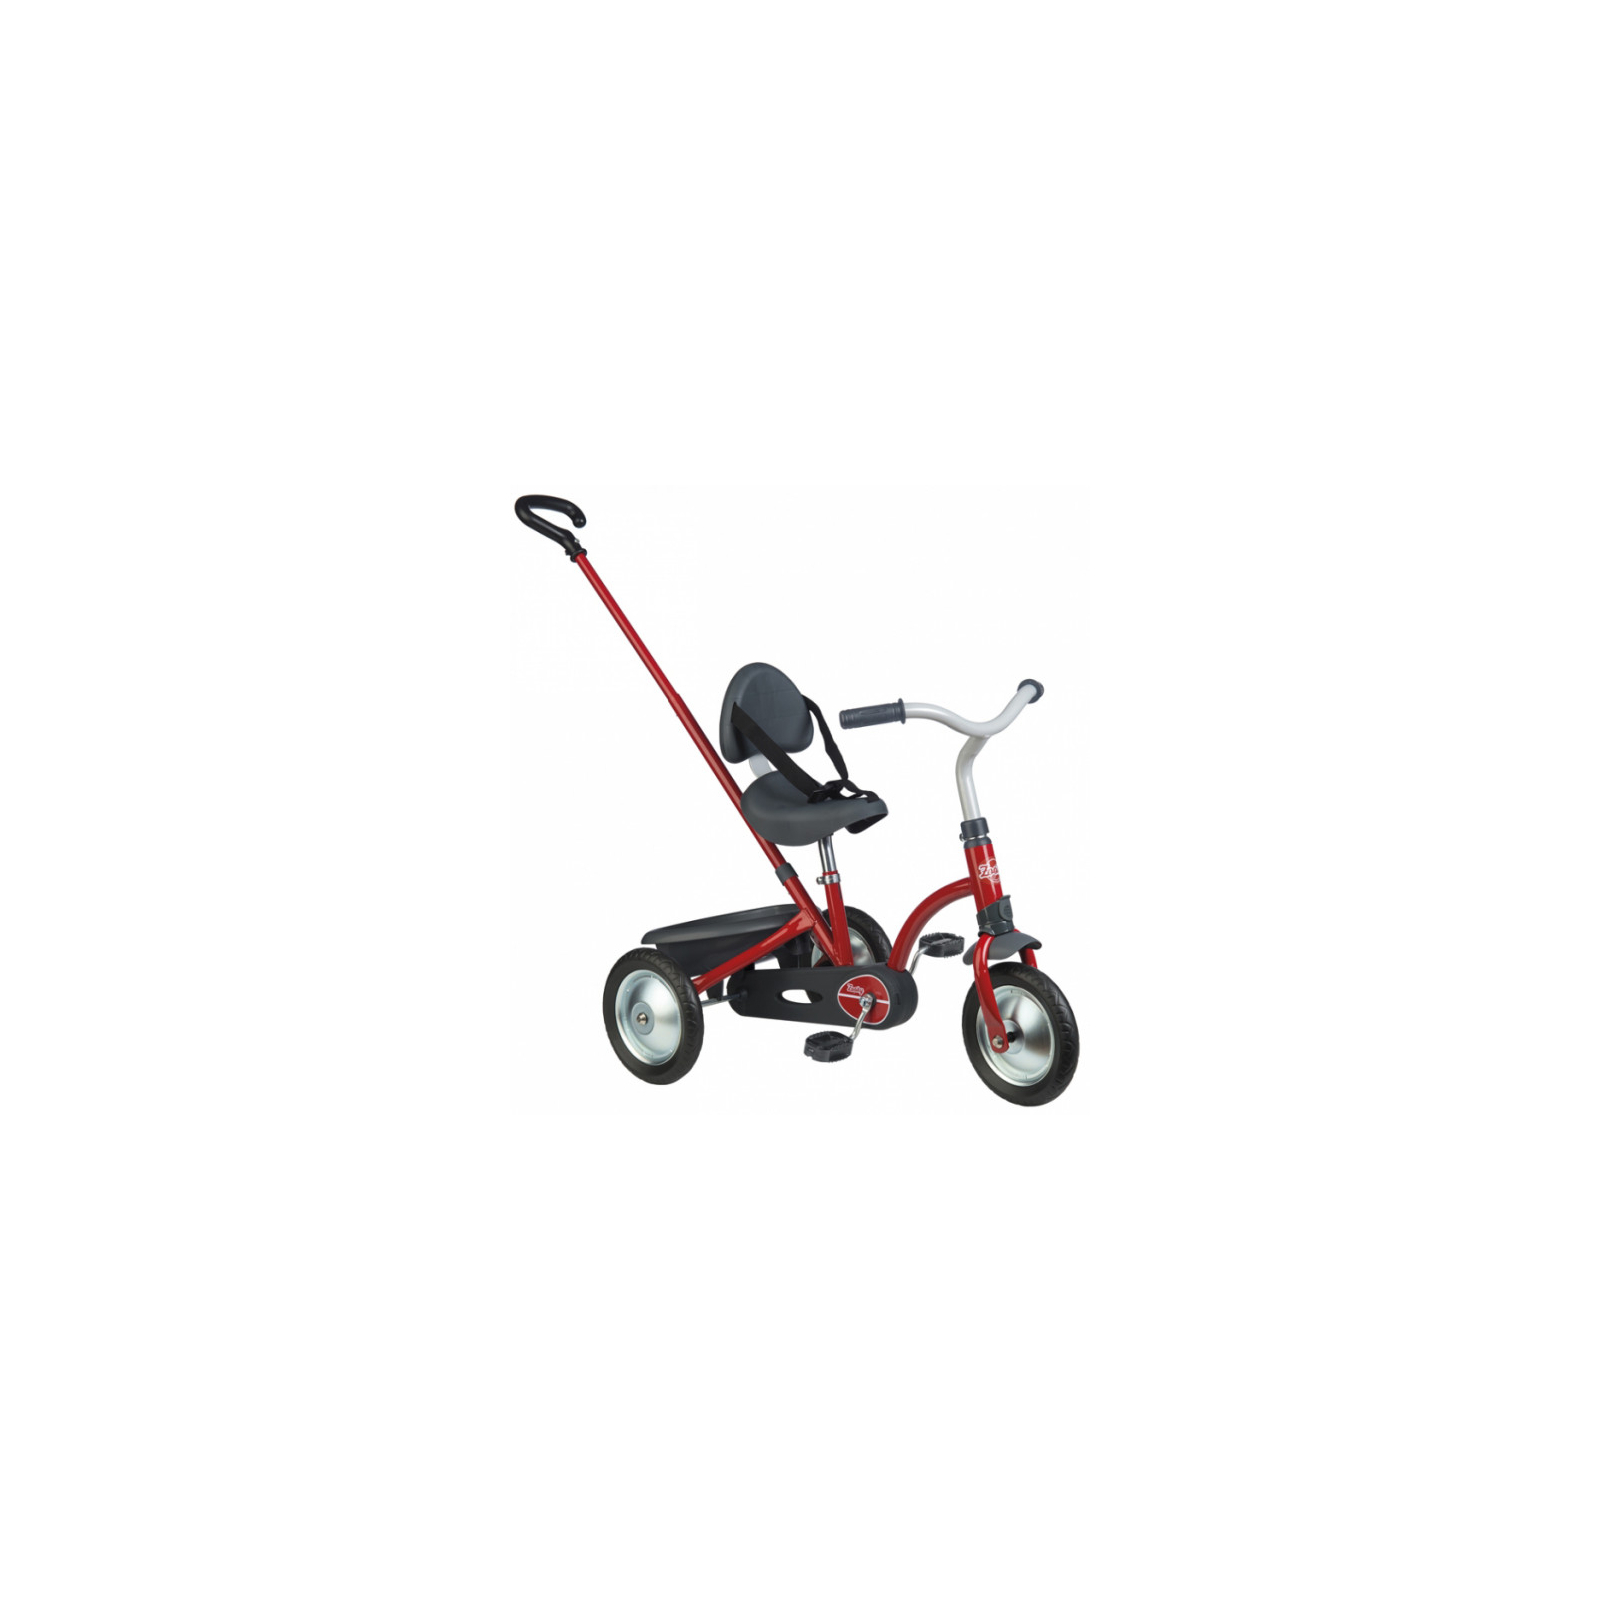 Дитячий велосипед Smoby Зукі, металевий з багажником, Червоний (740800)